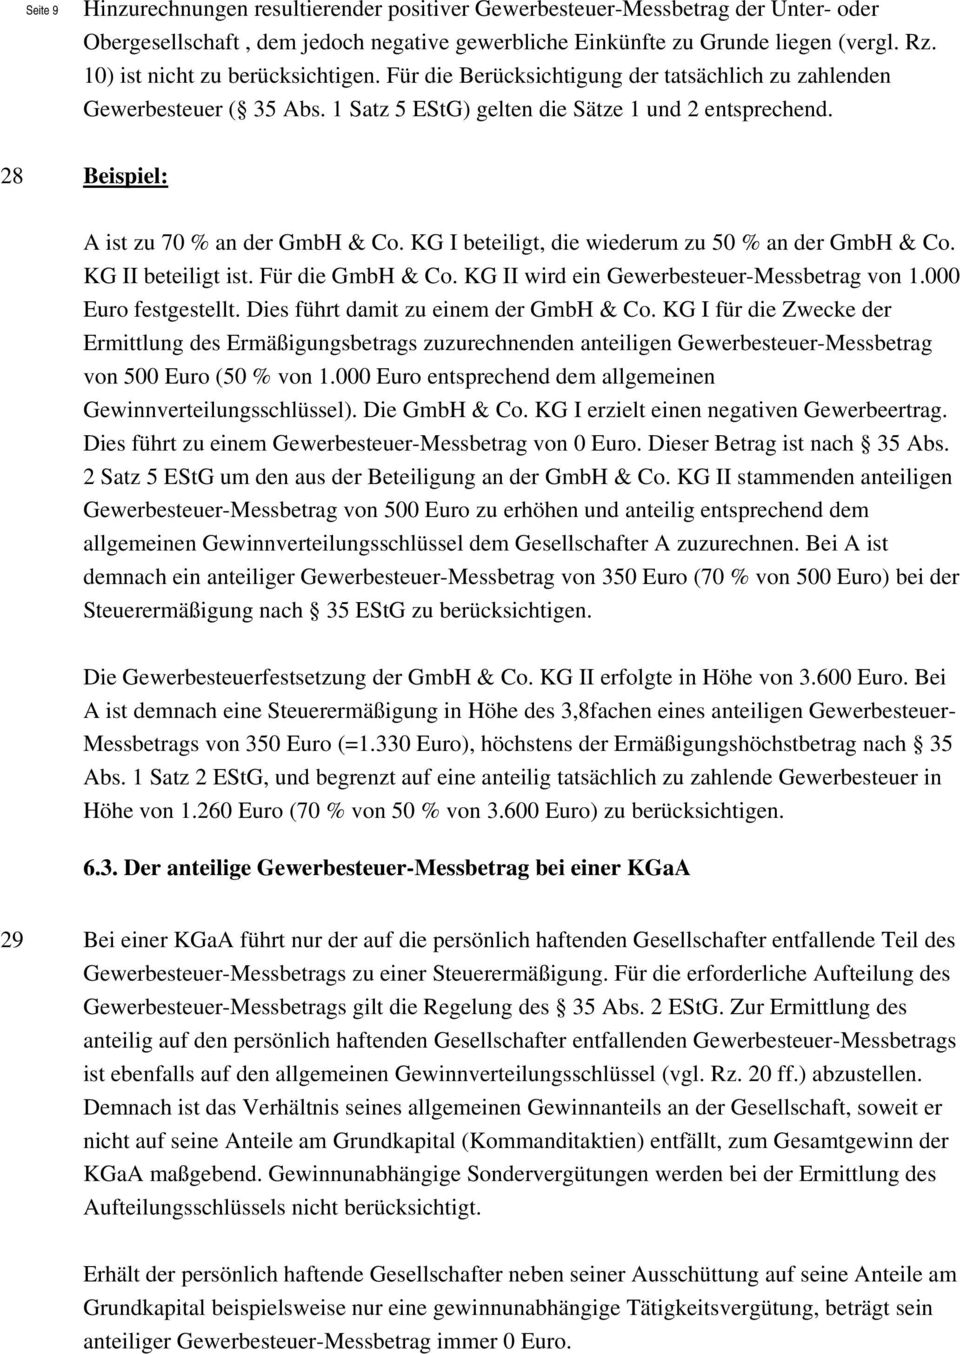 28 Beispiel: A ist zu 70 % an der GmbH & Co. KG I beteiligt, die wiederum zu 50 % an der GmbH & Co. KG II beteiligt ist. Für die GmbH & Co. KG II wird ein Gewerbesteuer-Messbetrag von 1.